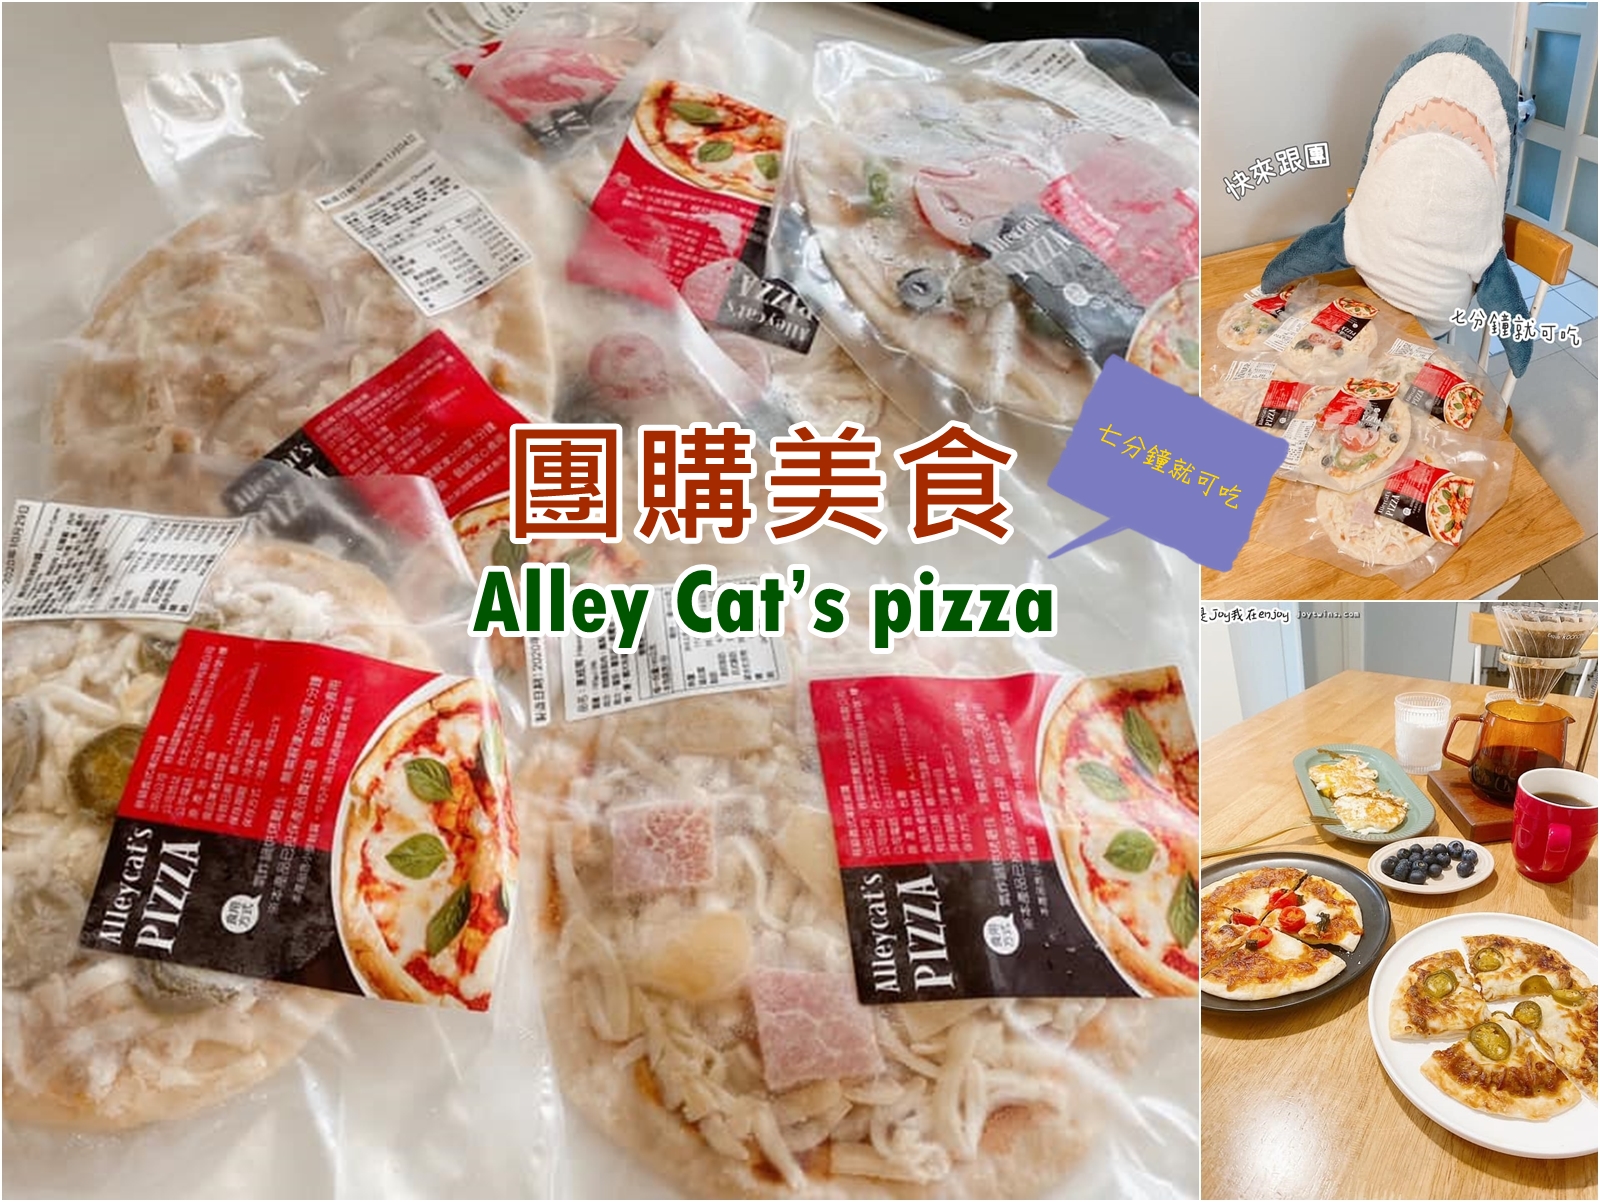 Alley Cat’s Pizza 七分鐘就能吃 早餐下午茶好夥伴 防疫囤貨好夥伴